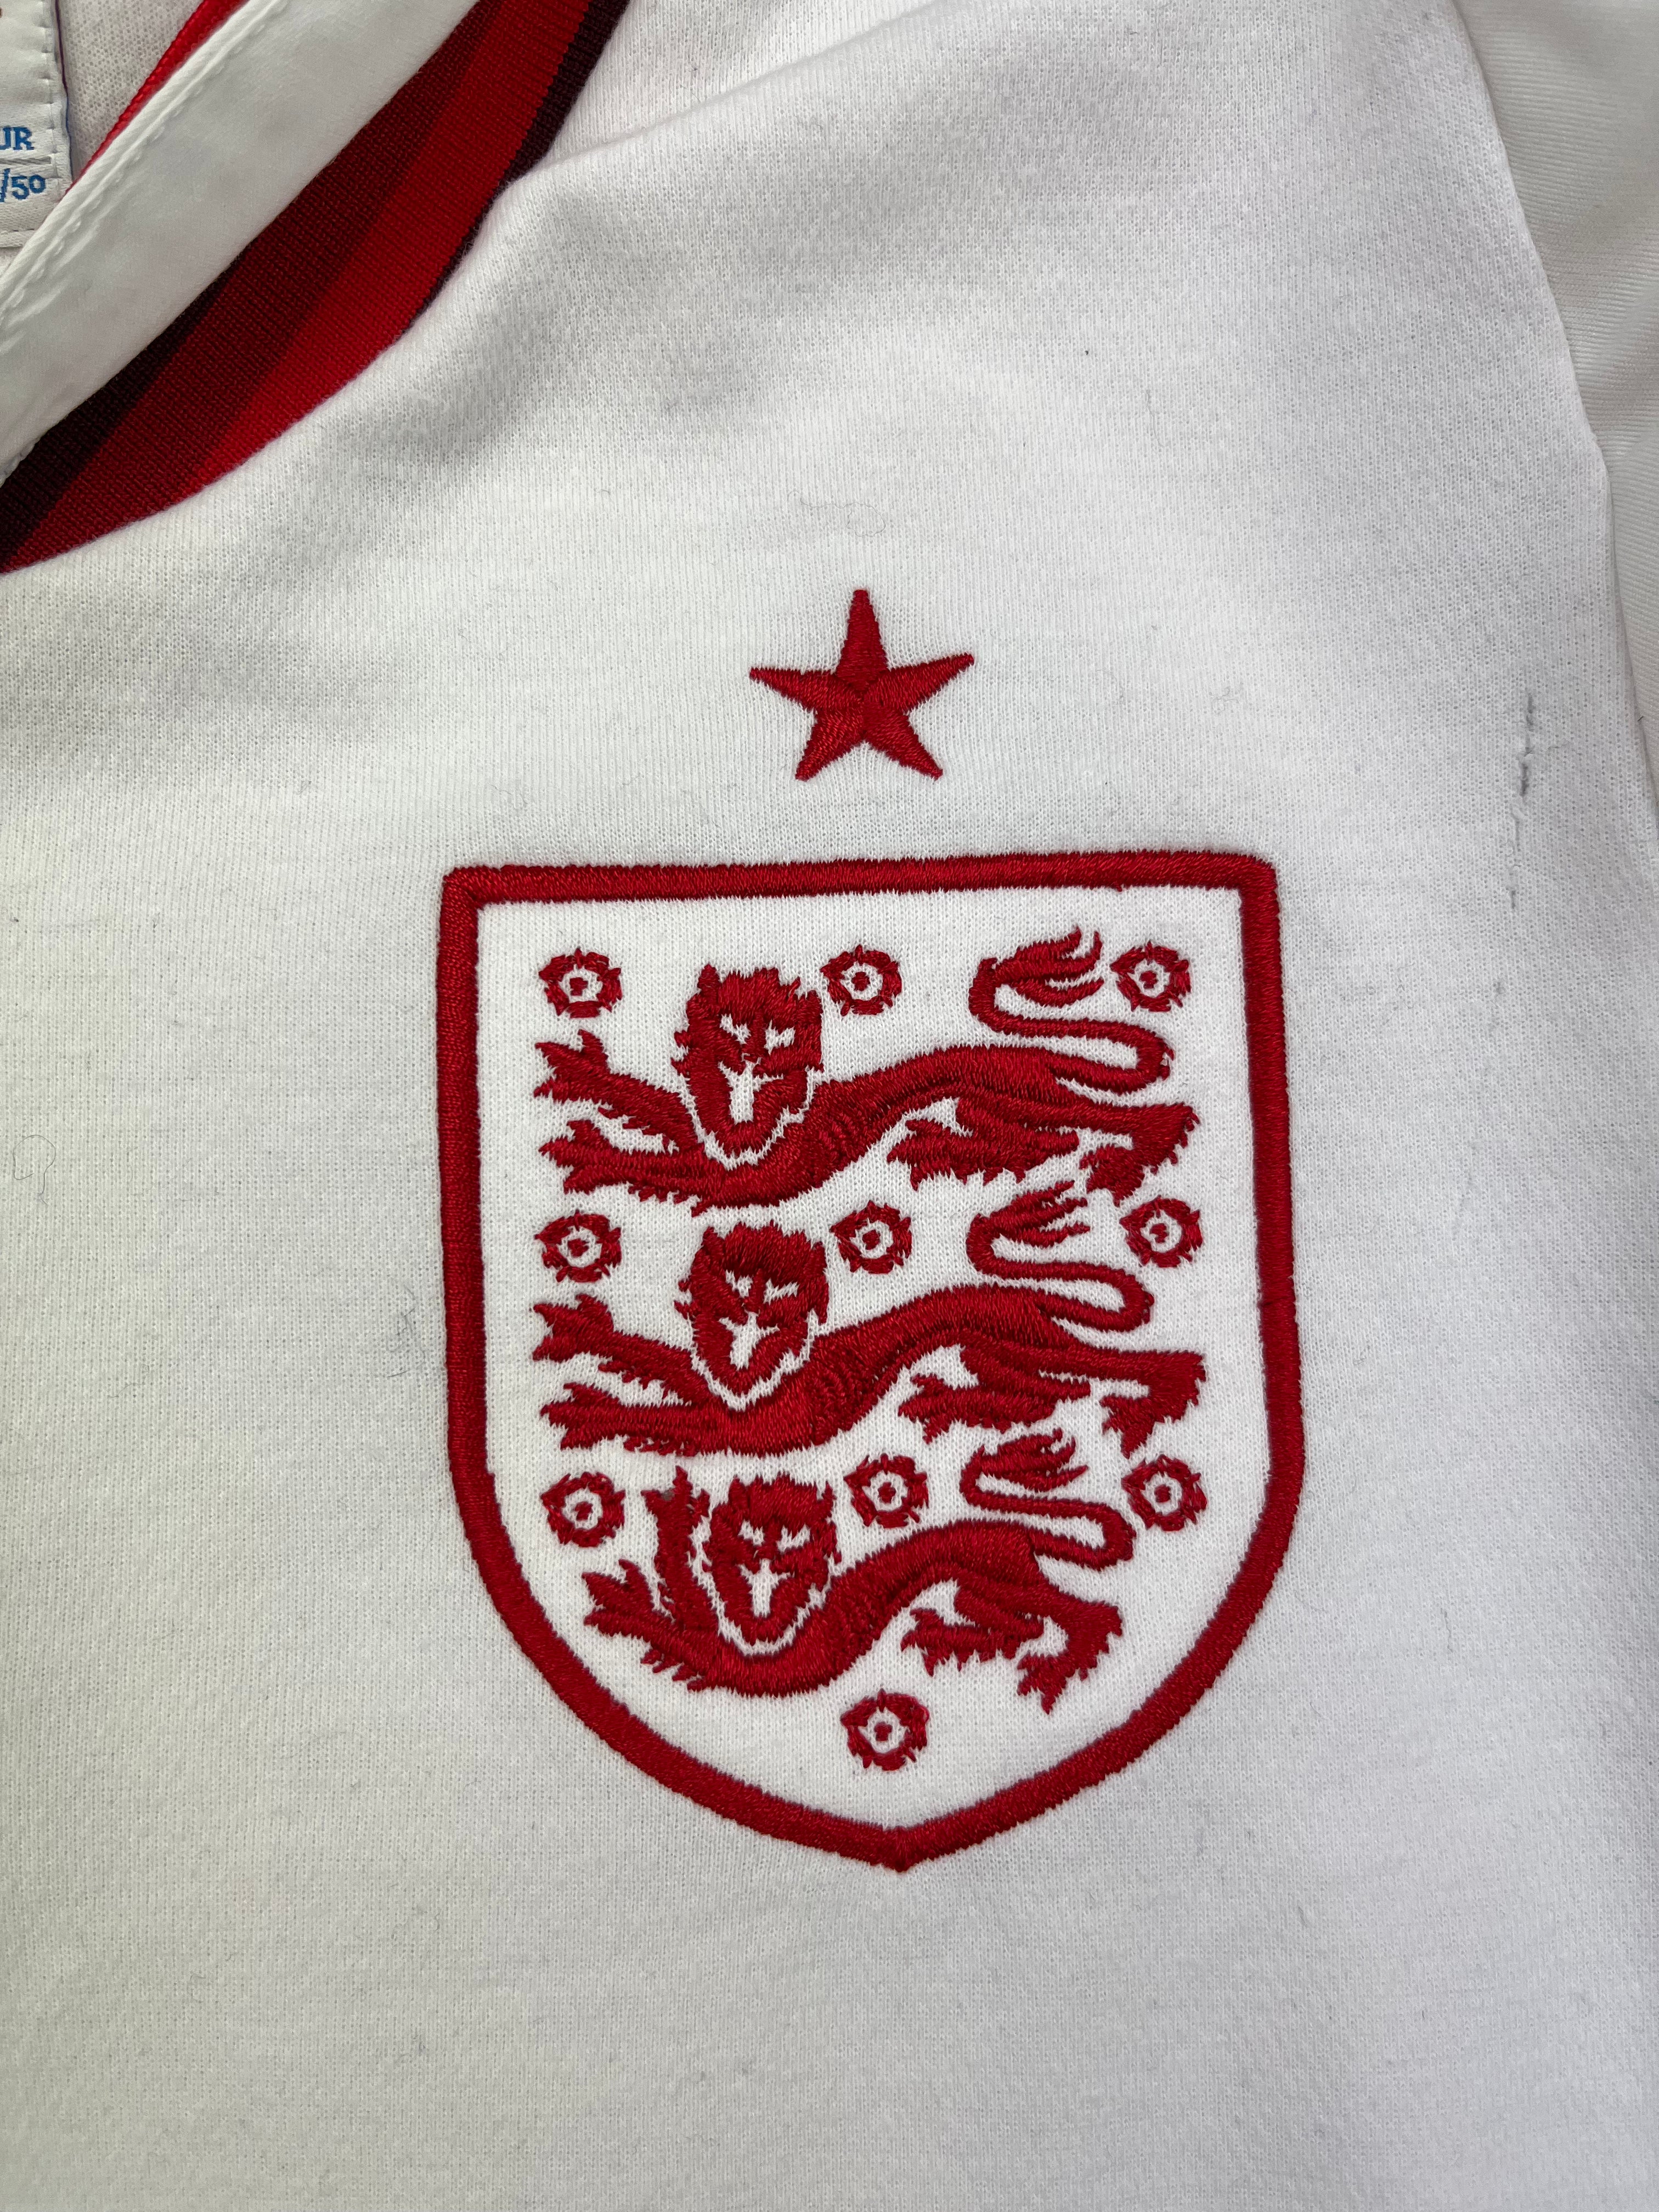 2012/13 England Home Shirt (M) 5/10